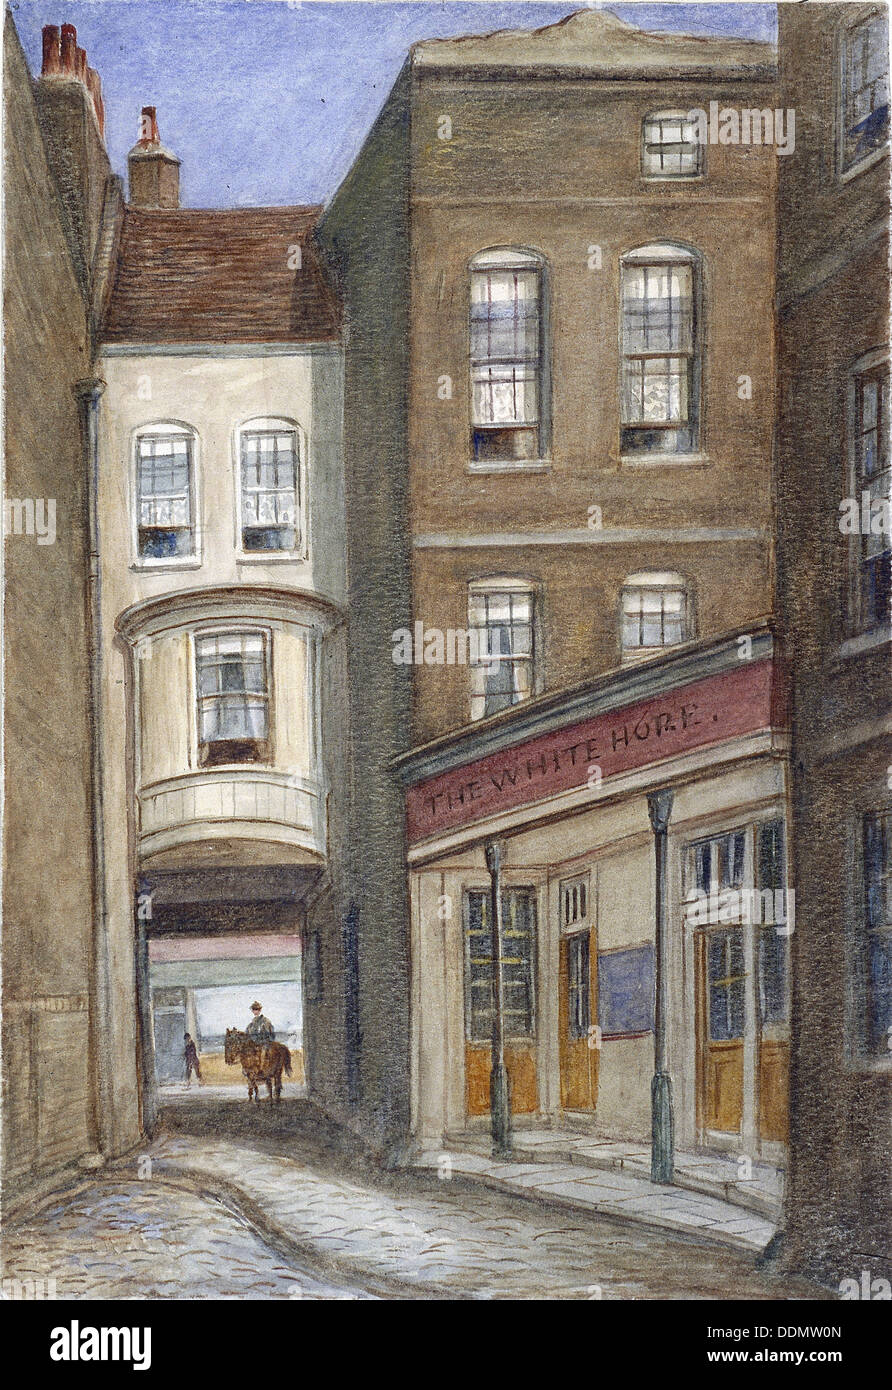 White Horse Inn, Fetter Lane, Londra, 1870. Artista: JT Wilson Foto Stock